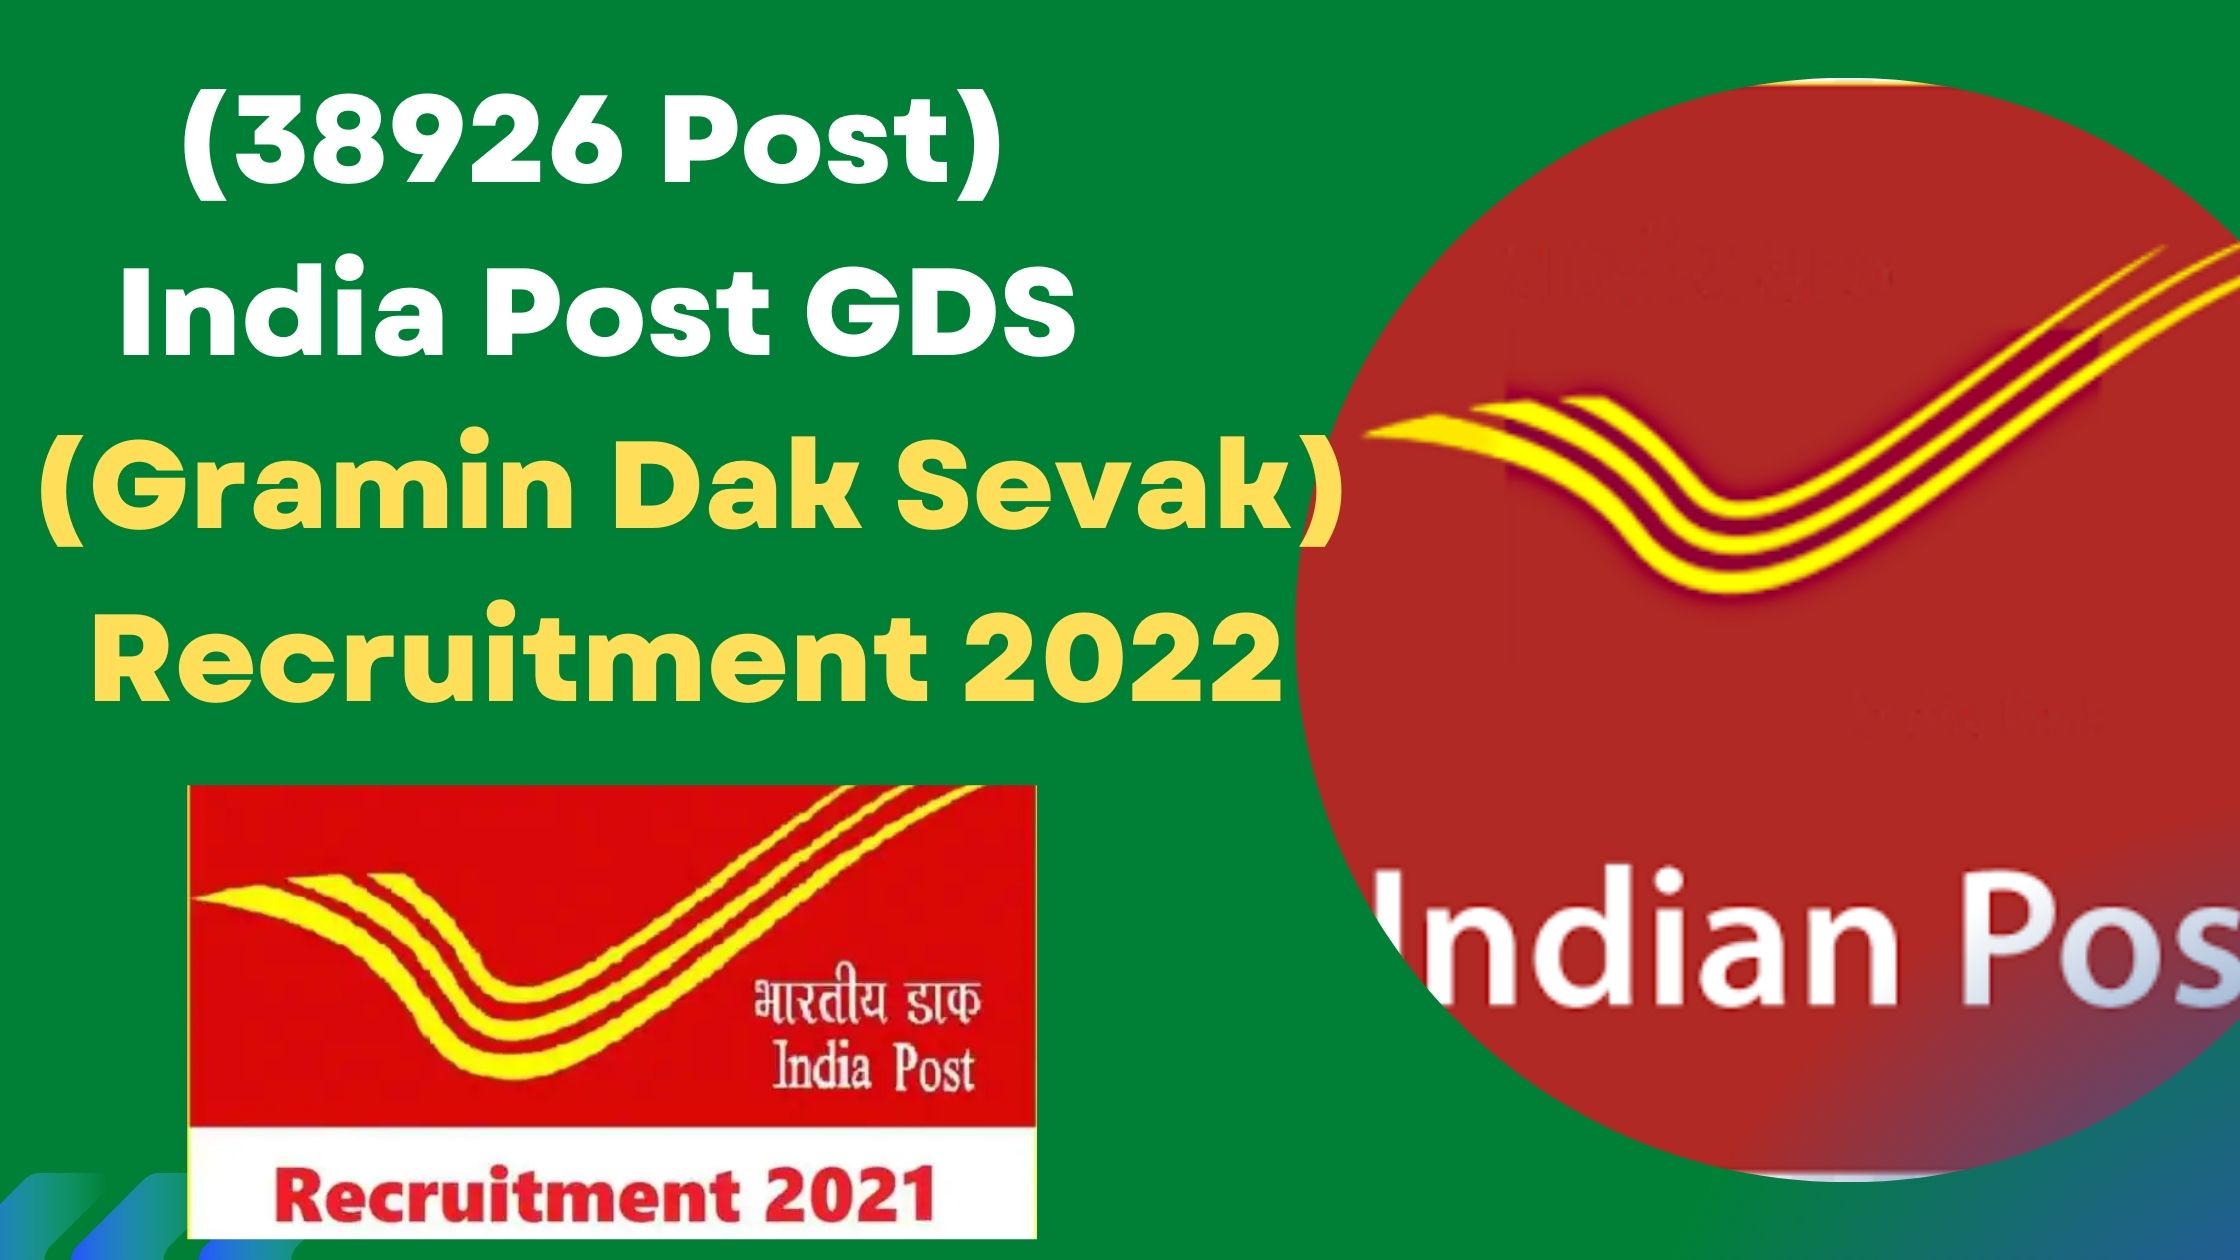 (38926 Post) India Post GDS (Gramin Dak Sevak) Recruitment 2022